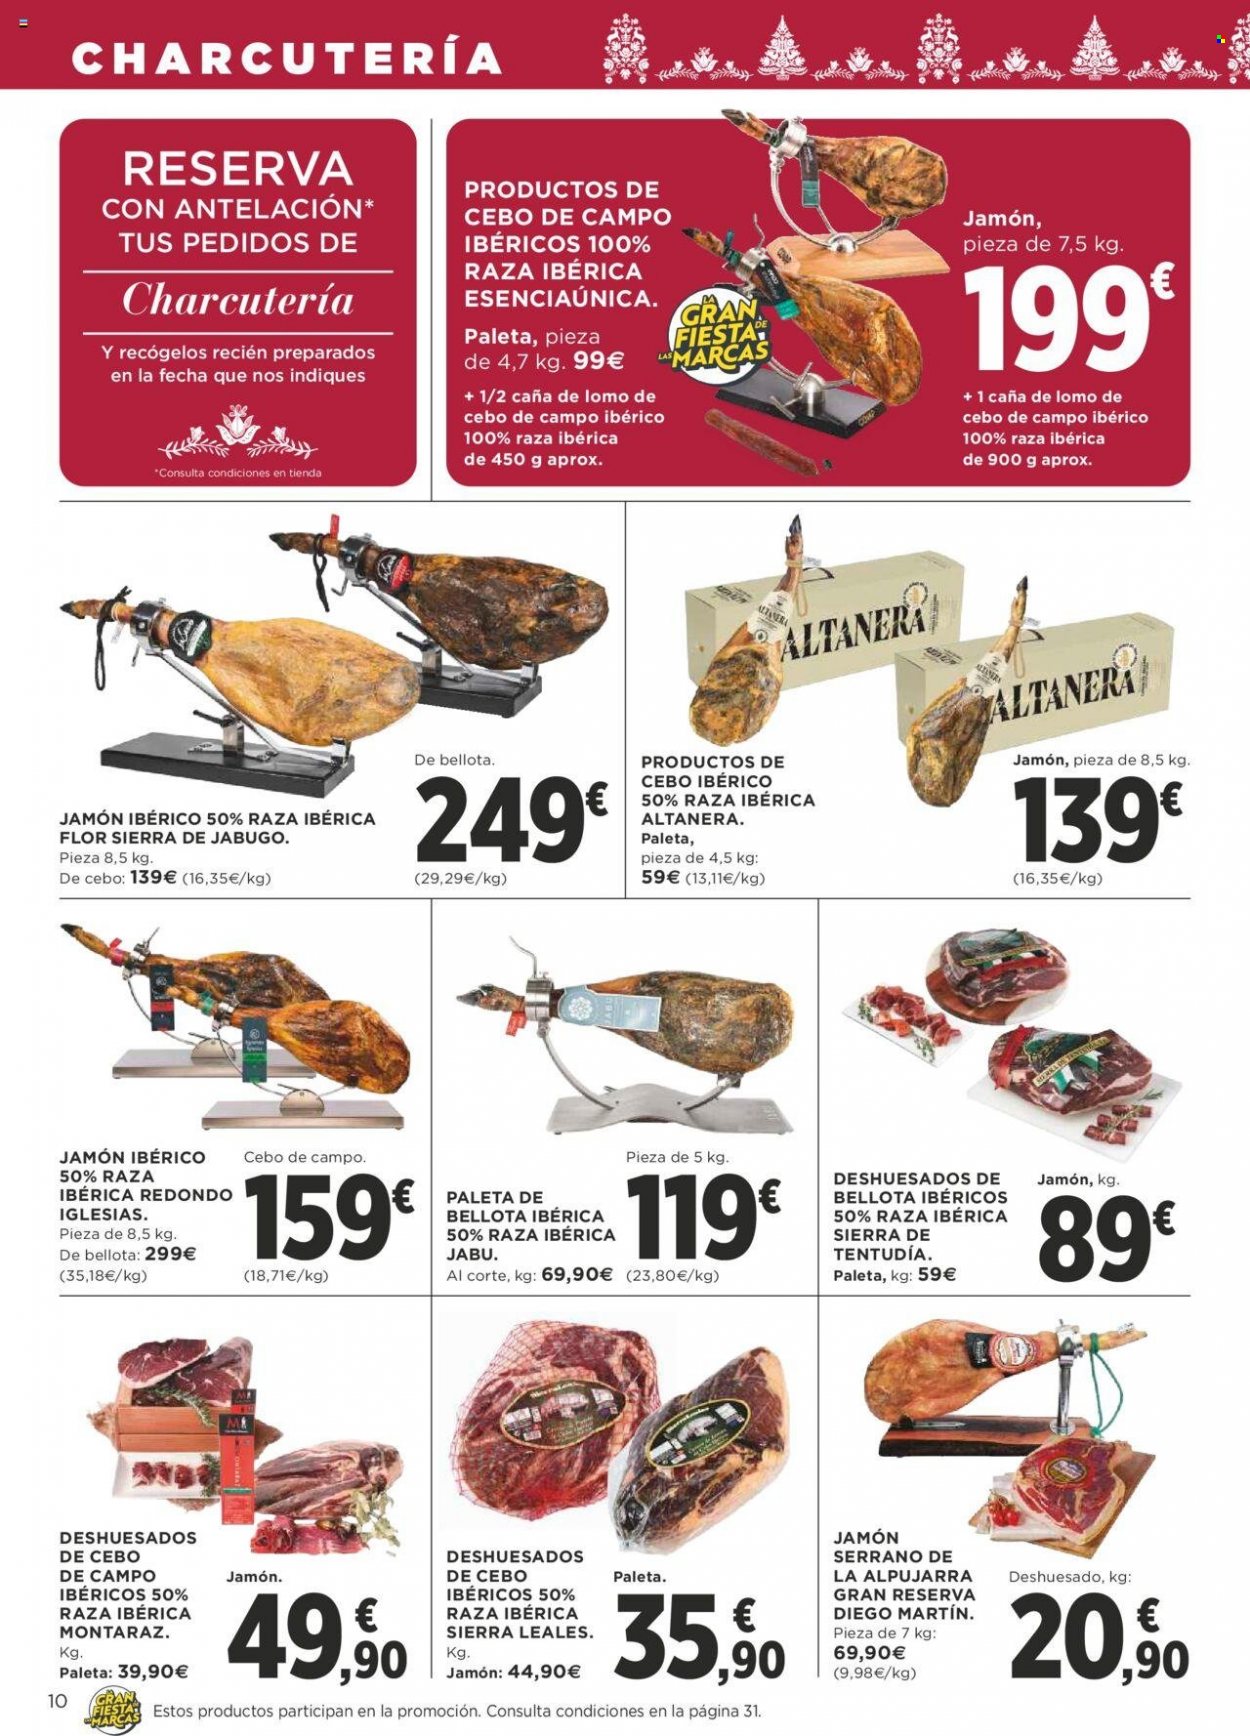 thumbnail - Folleto actual Supercor supermercados - 01/12/22 - 14/12/22 - Ventas - jamón, Gran Reserva, jamón ibérico, jamón serrano, lomo de cebo, caña de lomo, jamón de bellota. Página 10.